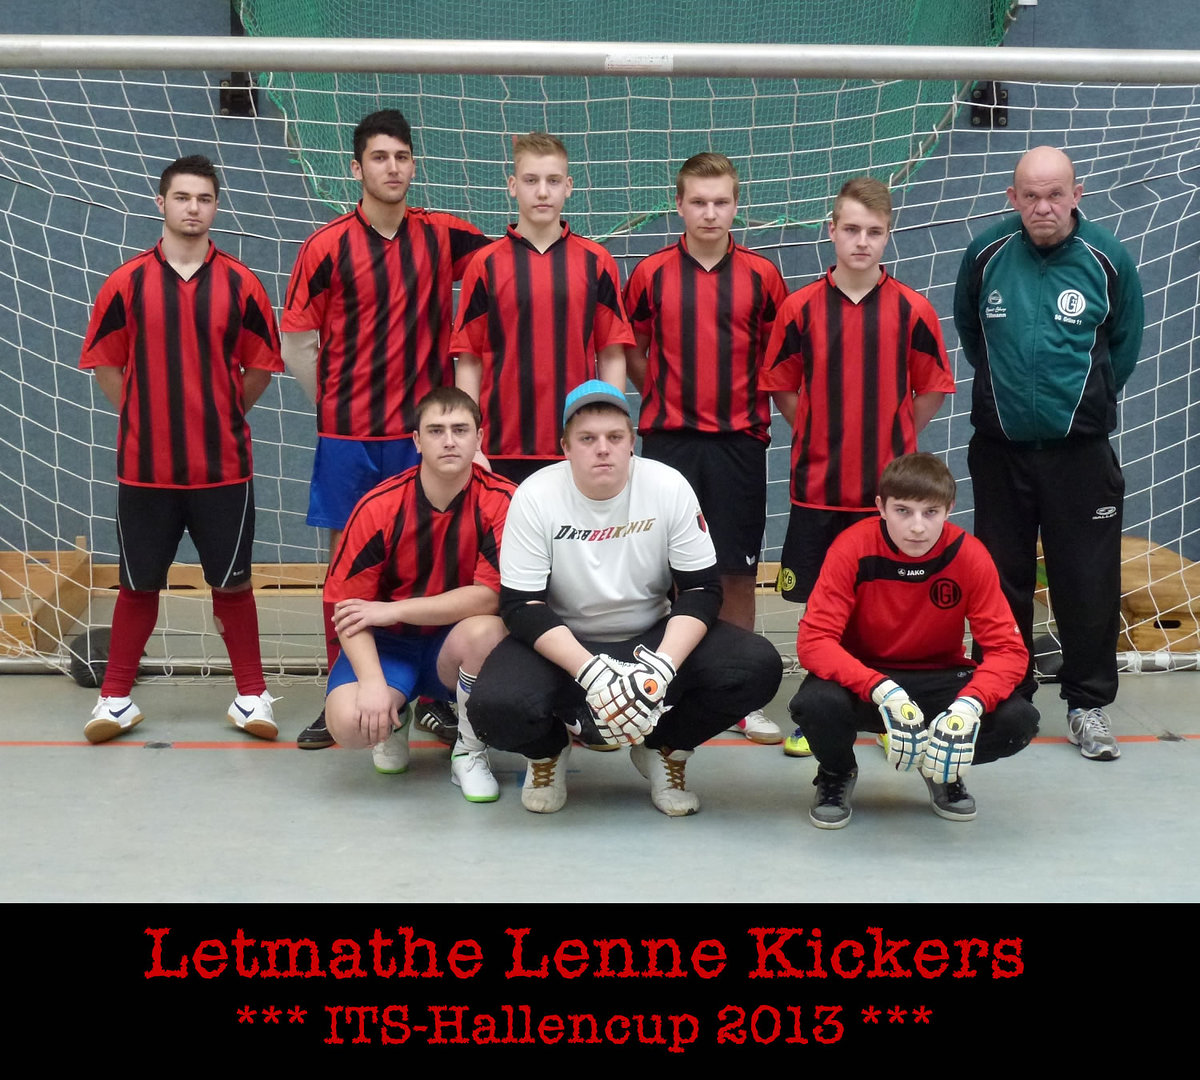 Its hallencup 2013   teamfotos   letmathe lenne kickers retina